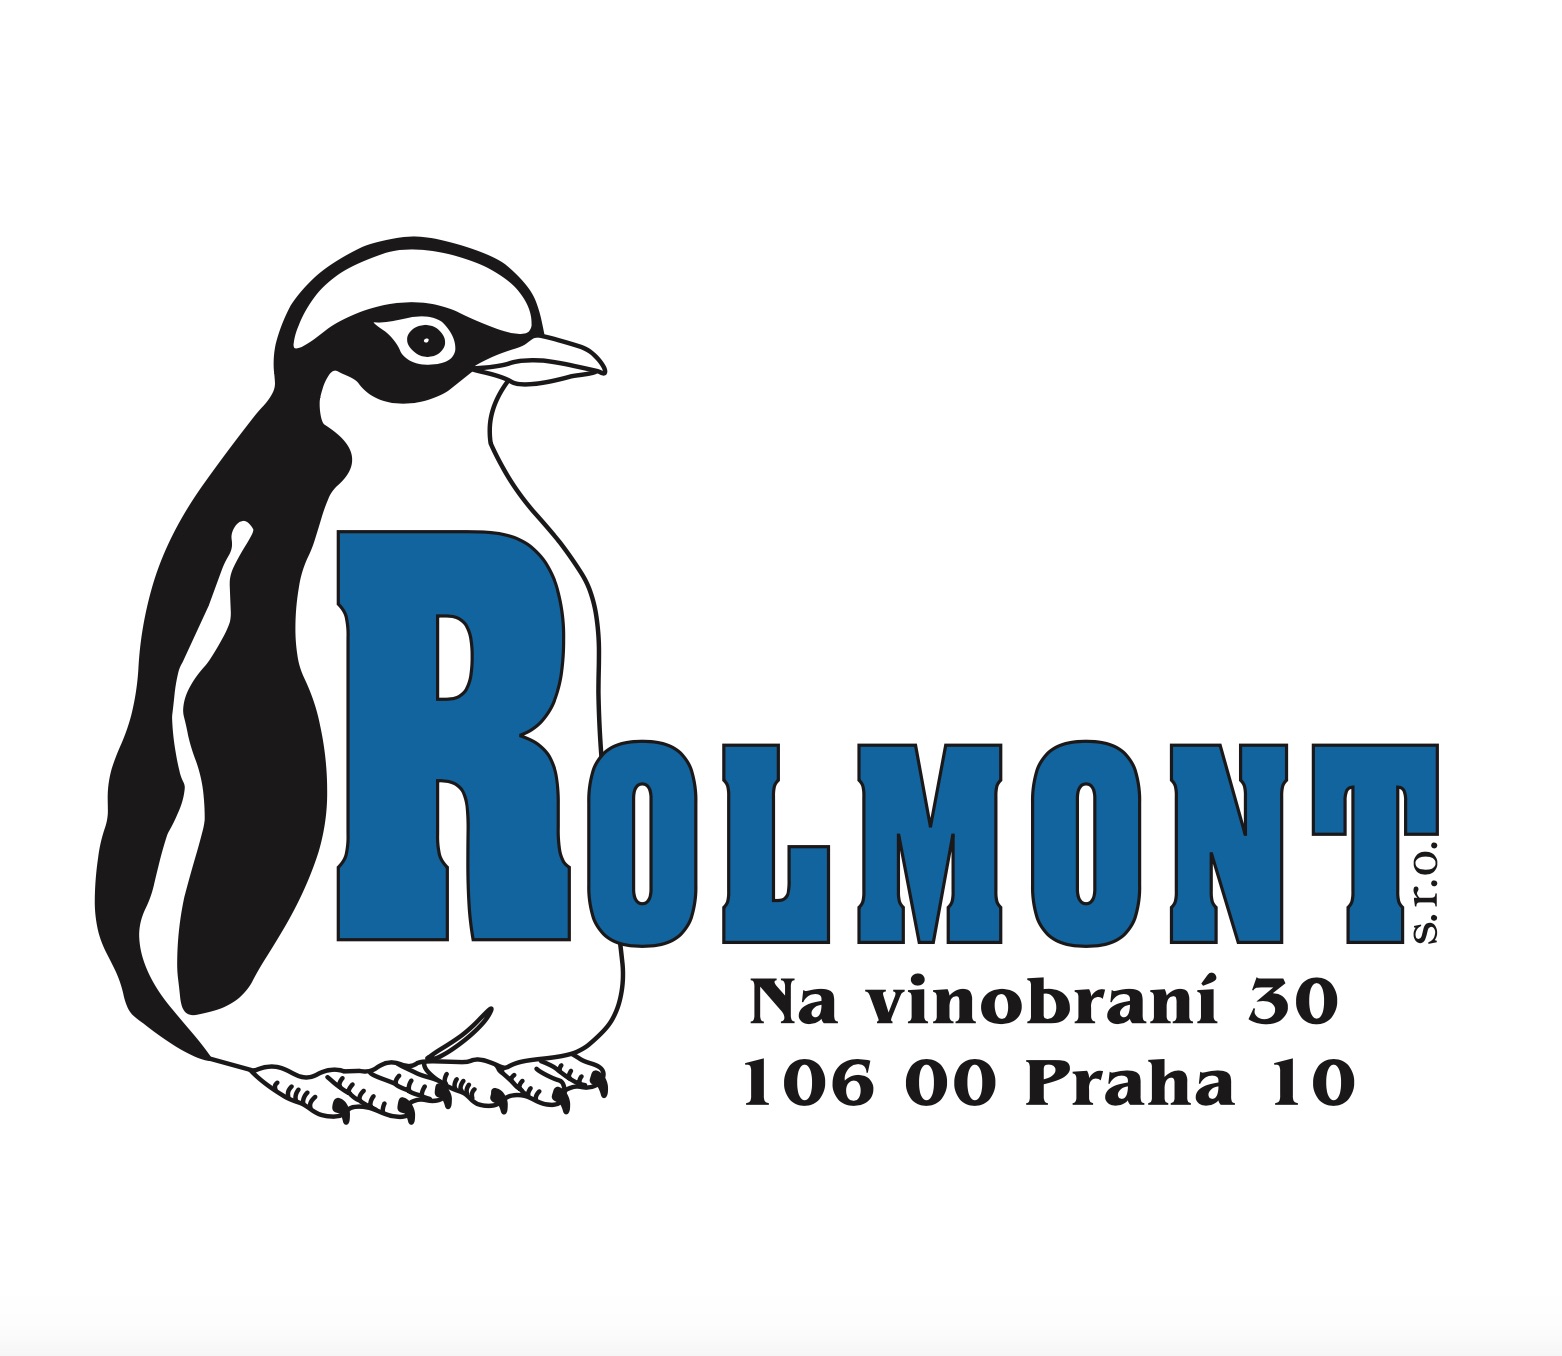 Rolmont